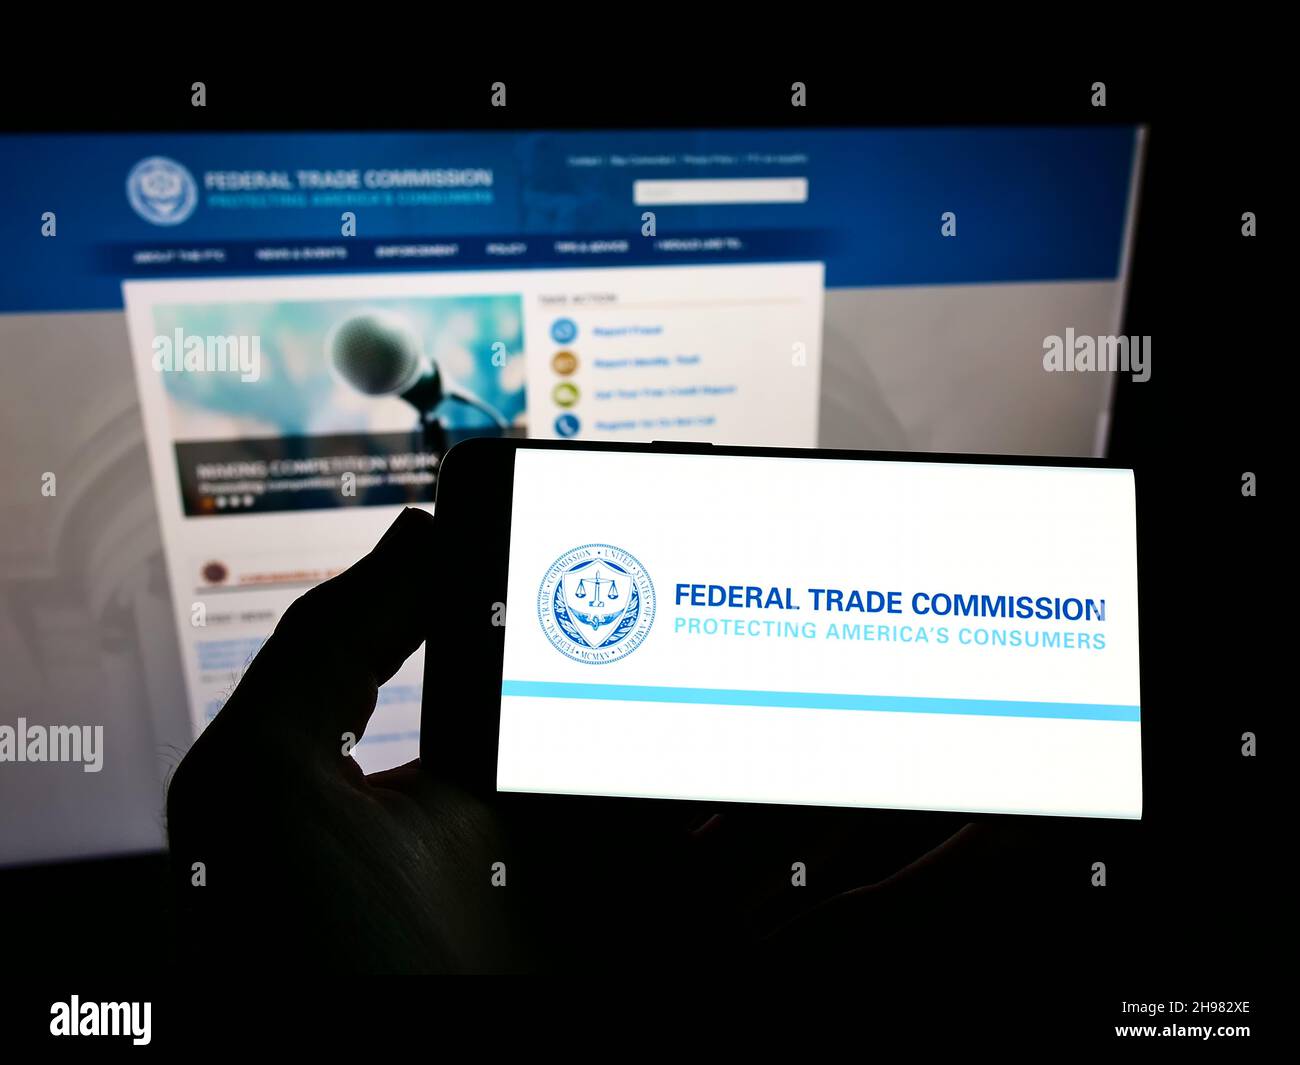 Persona che tiene uno smartphone con il logo dell'agenzia governativa statunitense Federal Trade Commission (FTC) sullo schermo di fronte al sito Web. Mettere a fuoco sul display del telefono. Foto Stock